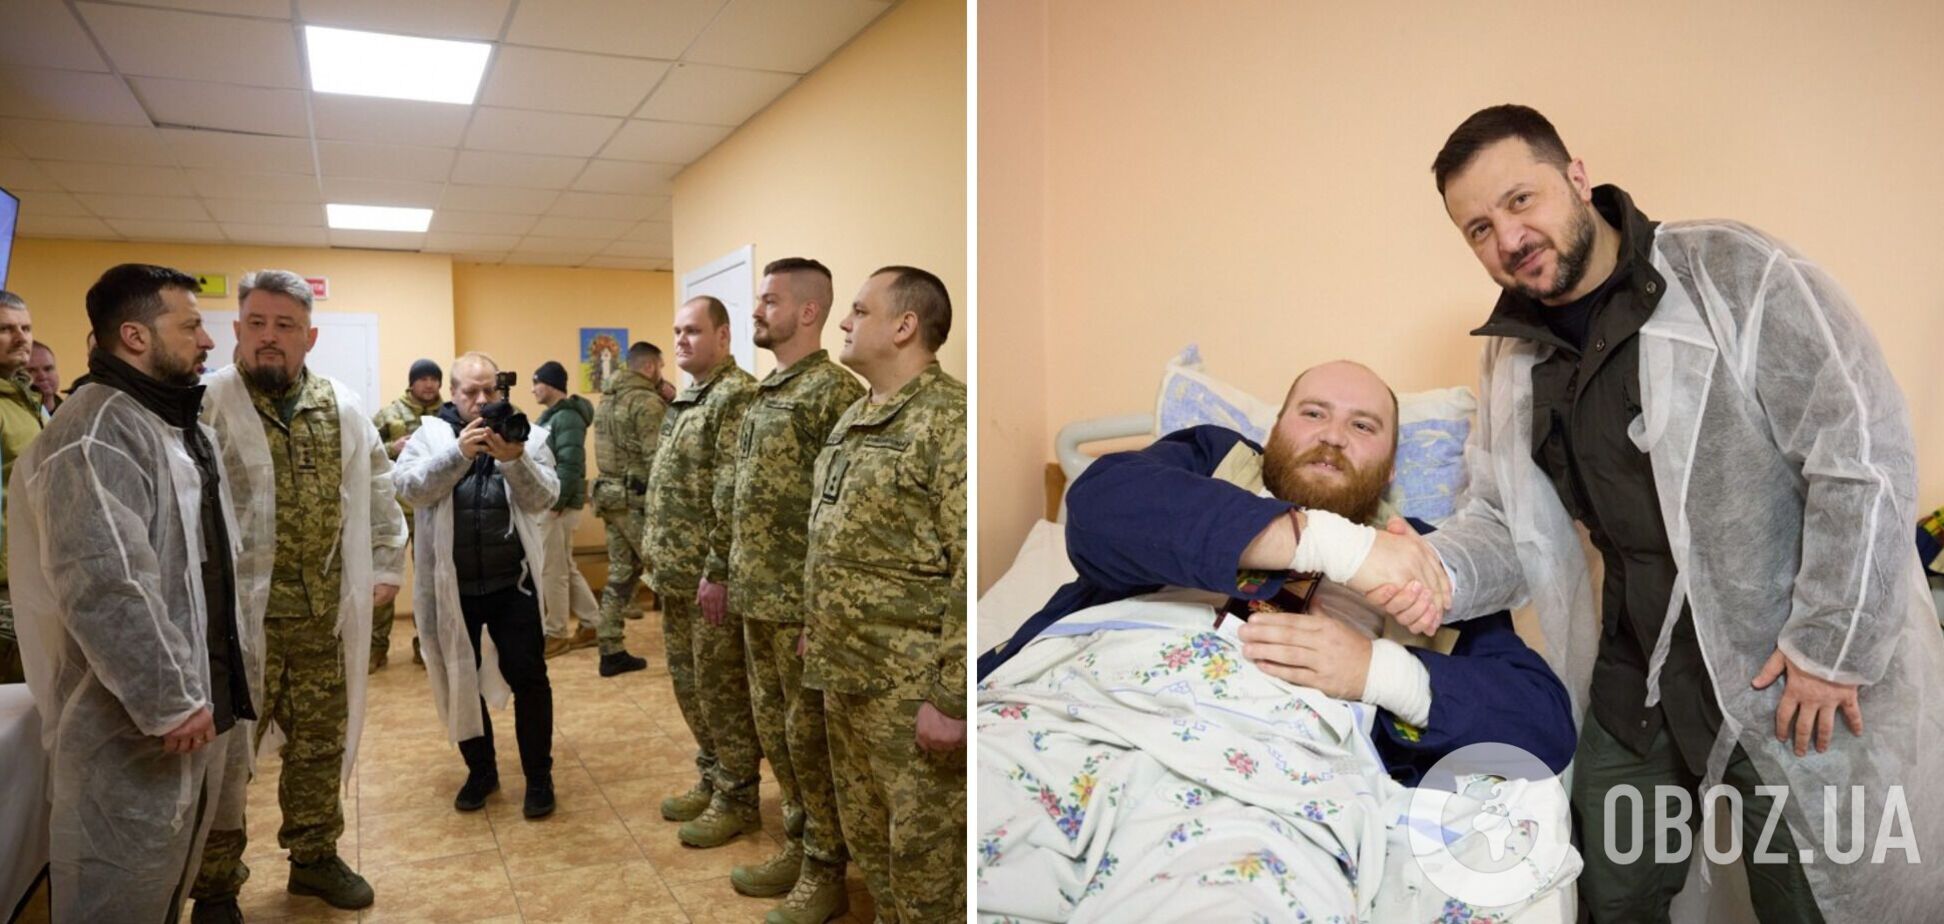 'Я желаю вам здоровья и победы': Зеленский посетил в Харькове раненых украинских защитников. Фото и видео